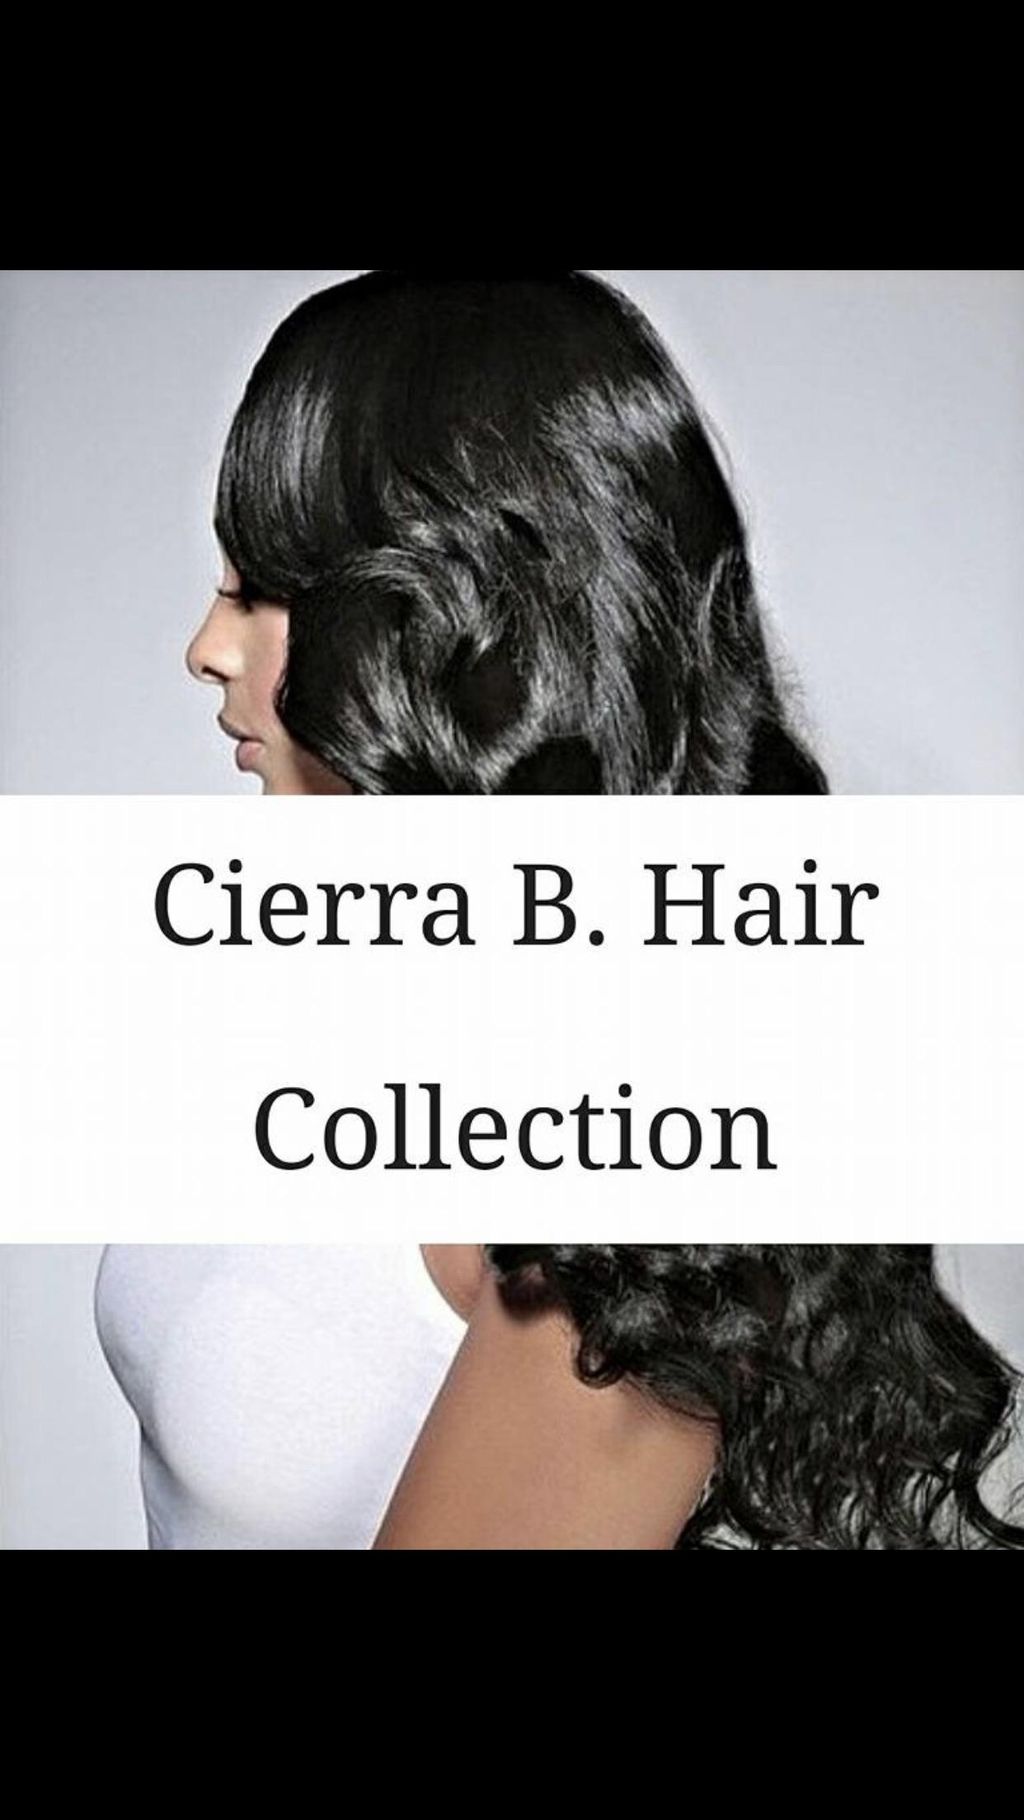 Cierra B. Hair